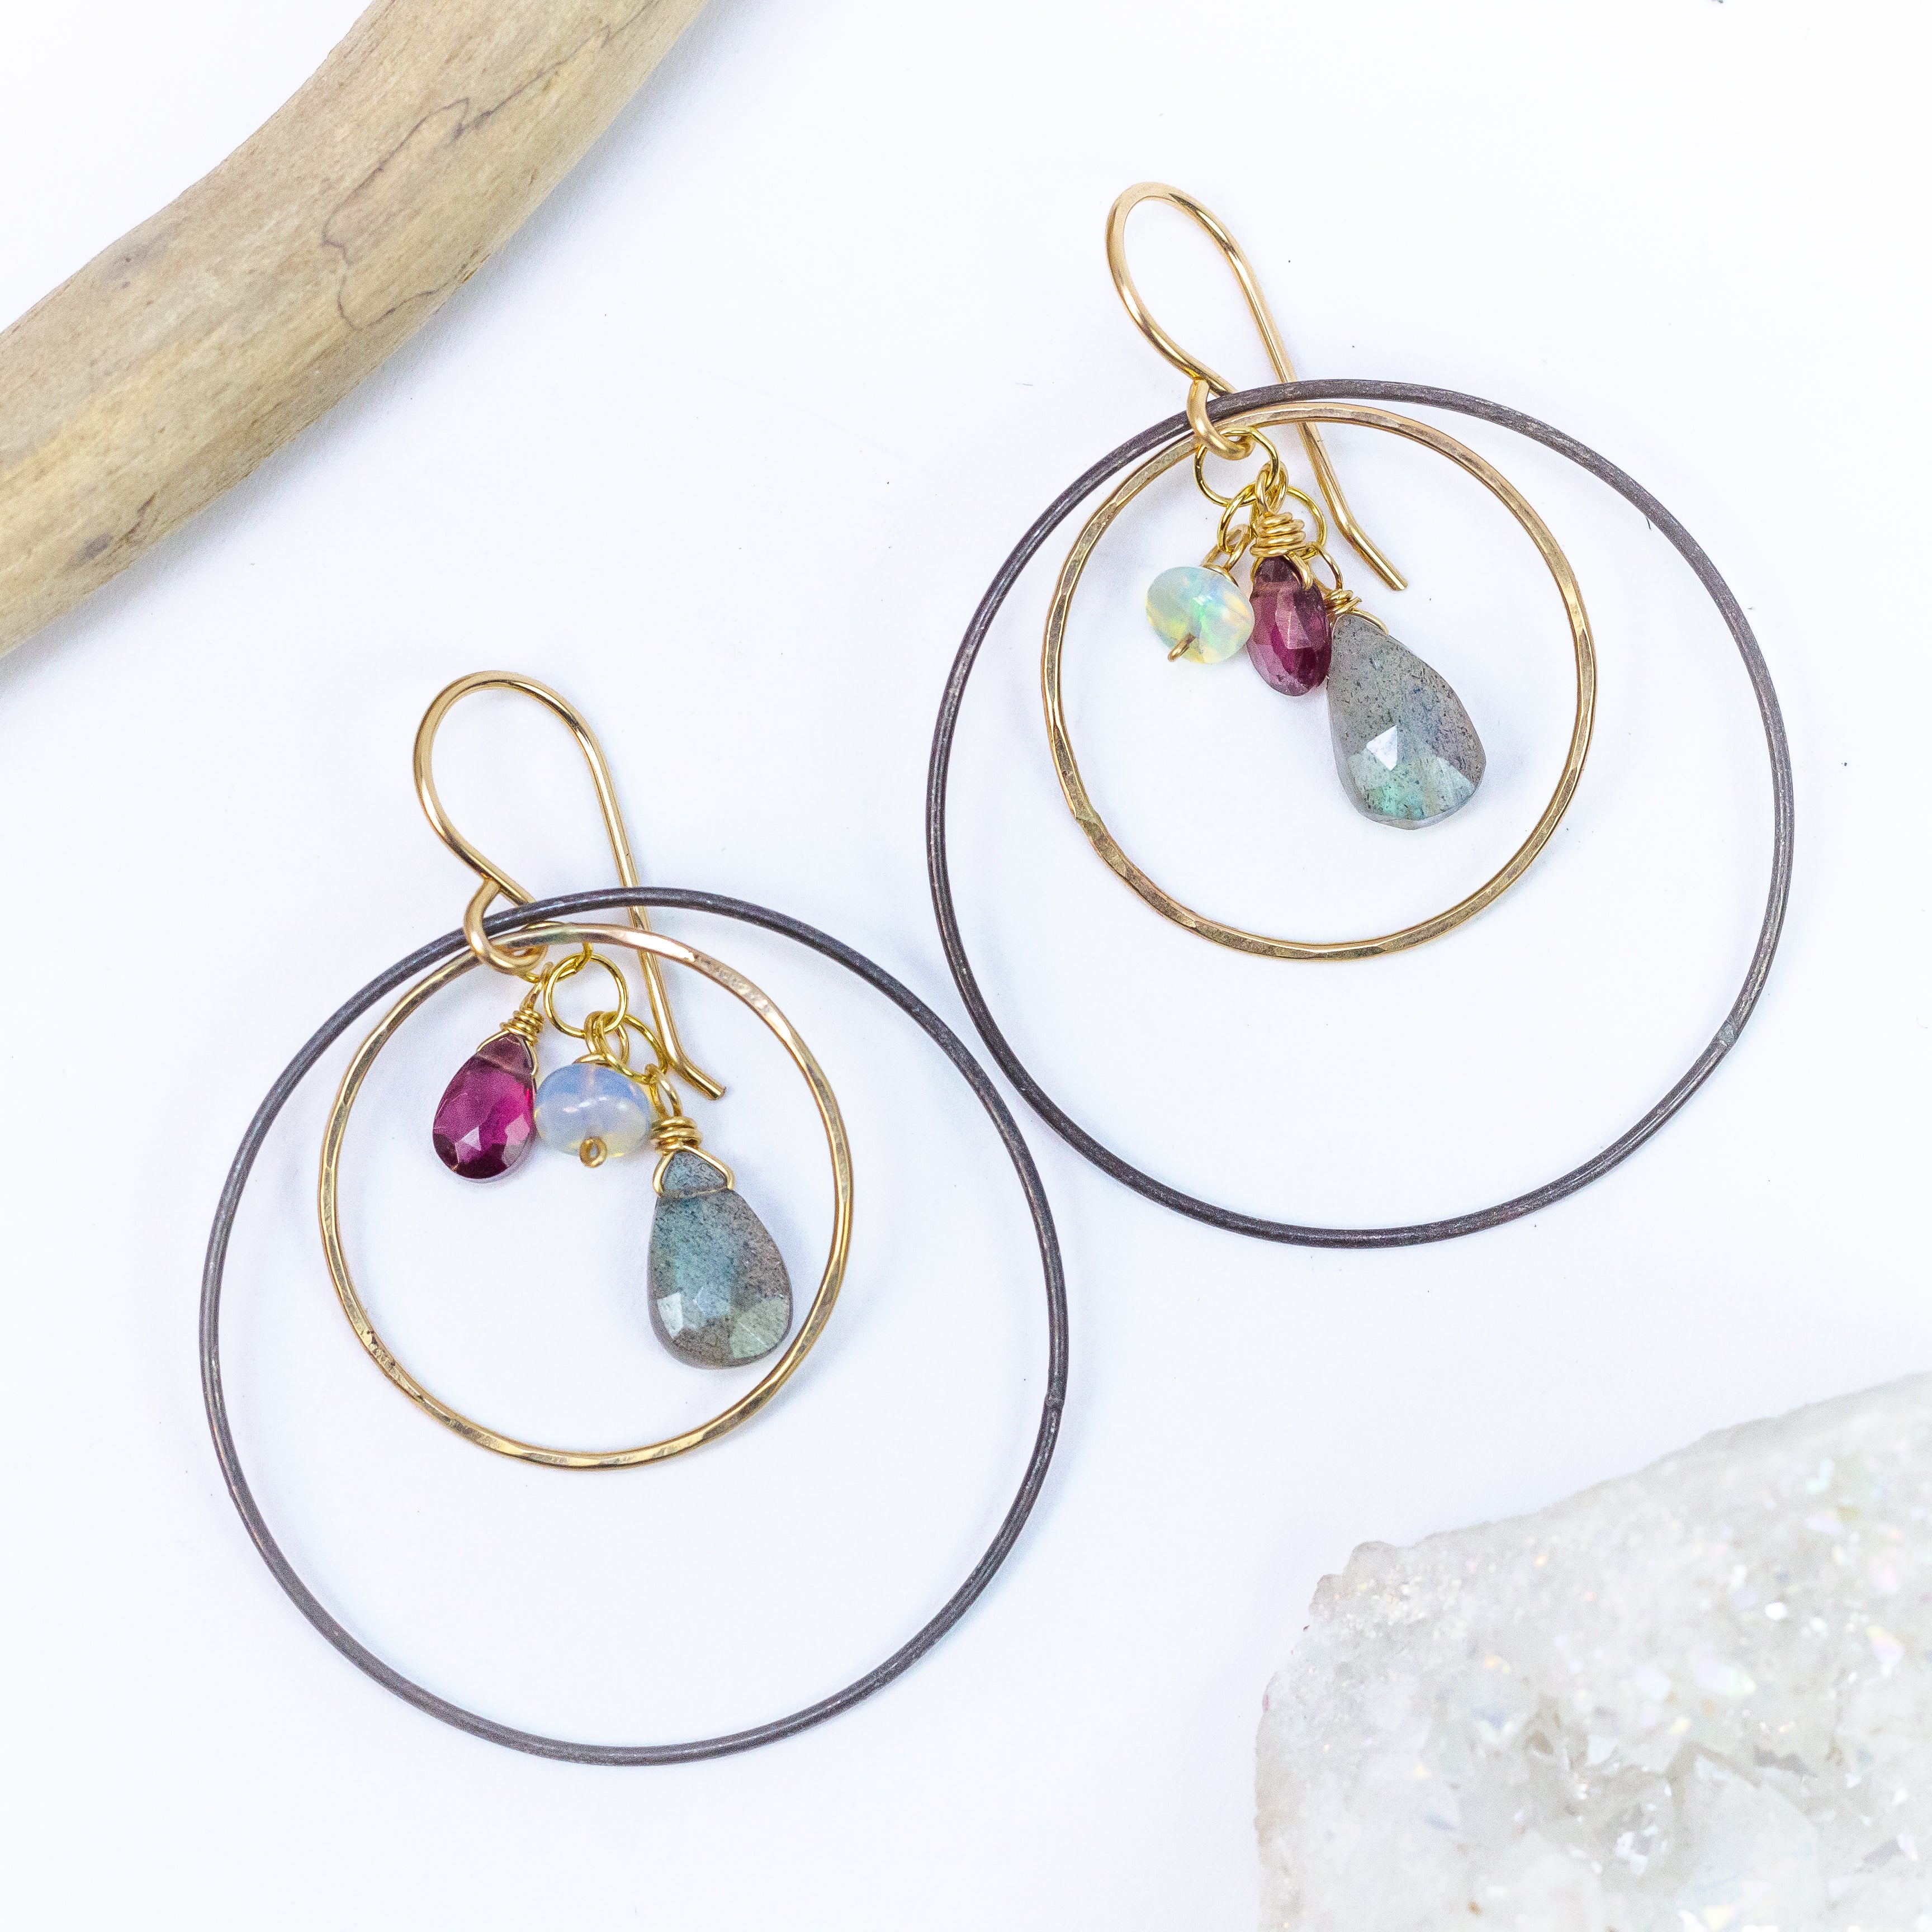 handmade oxidized sterling gold filled mixed metal gemstone hoop earrings laura j designs